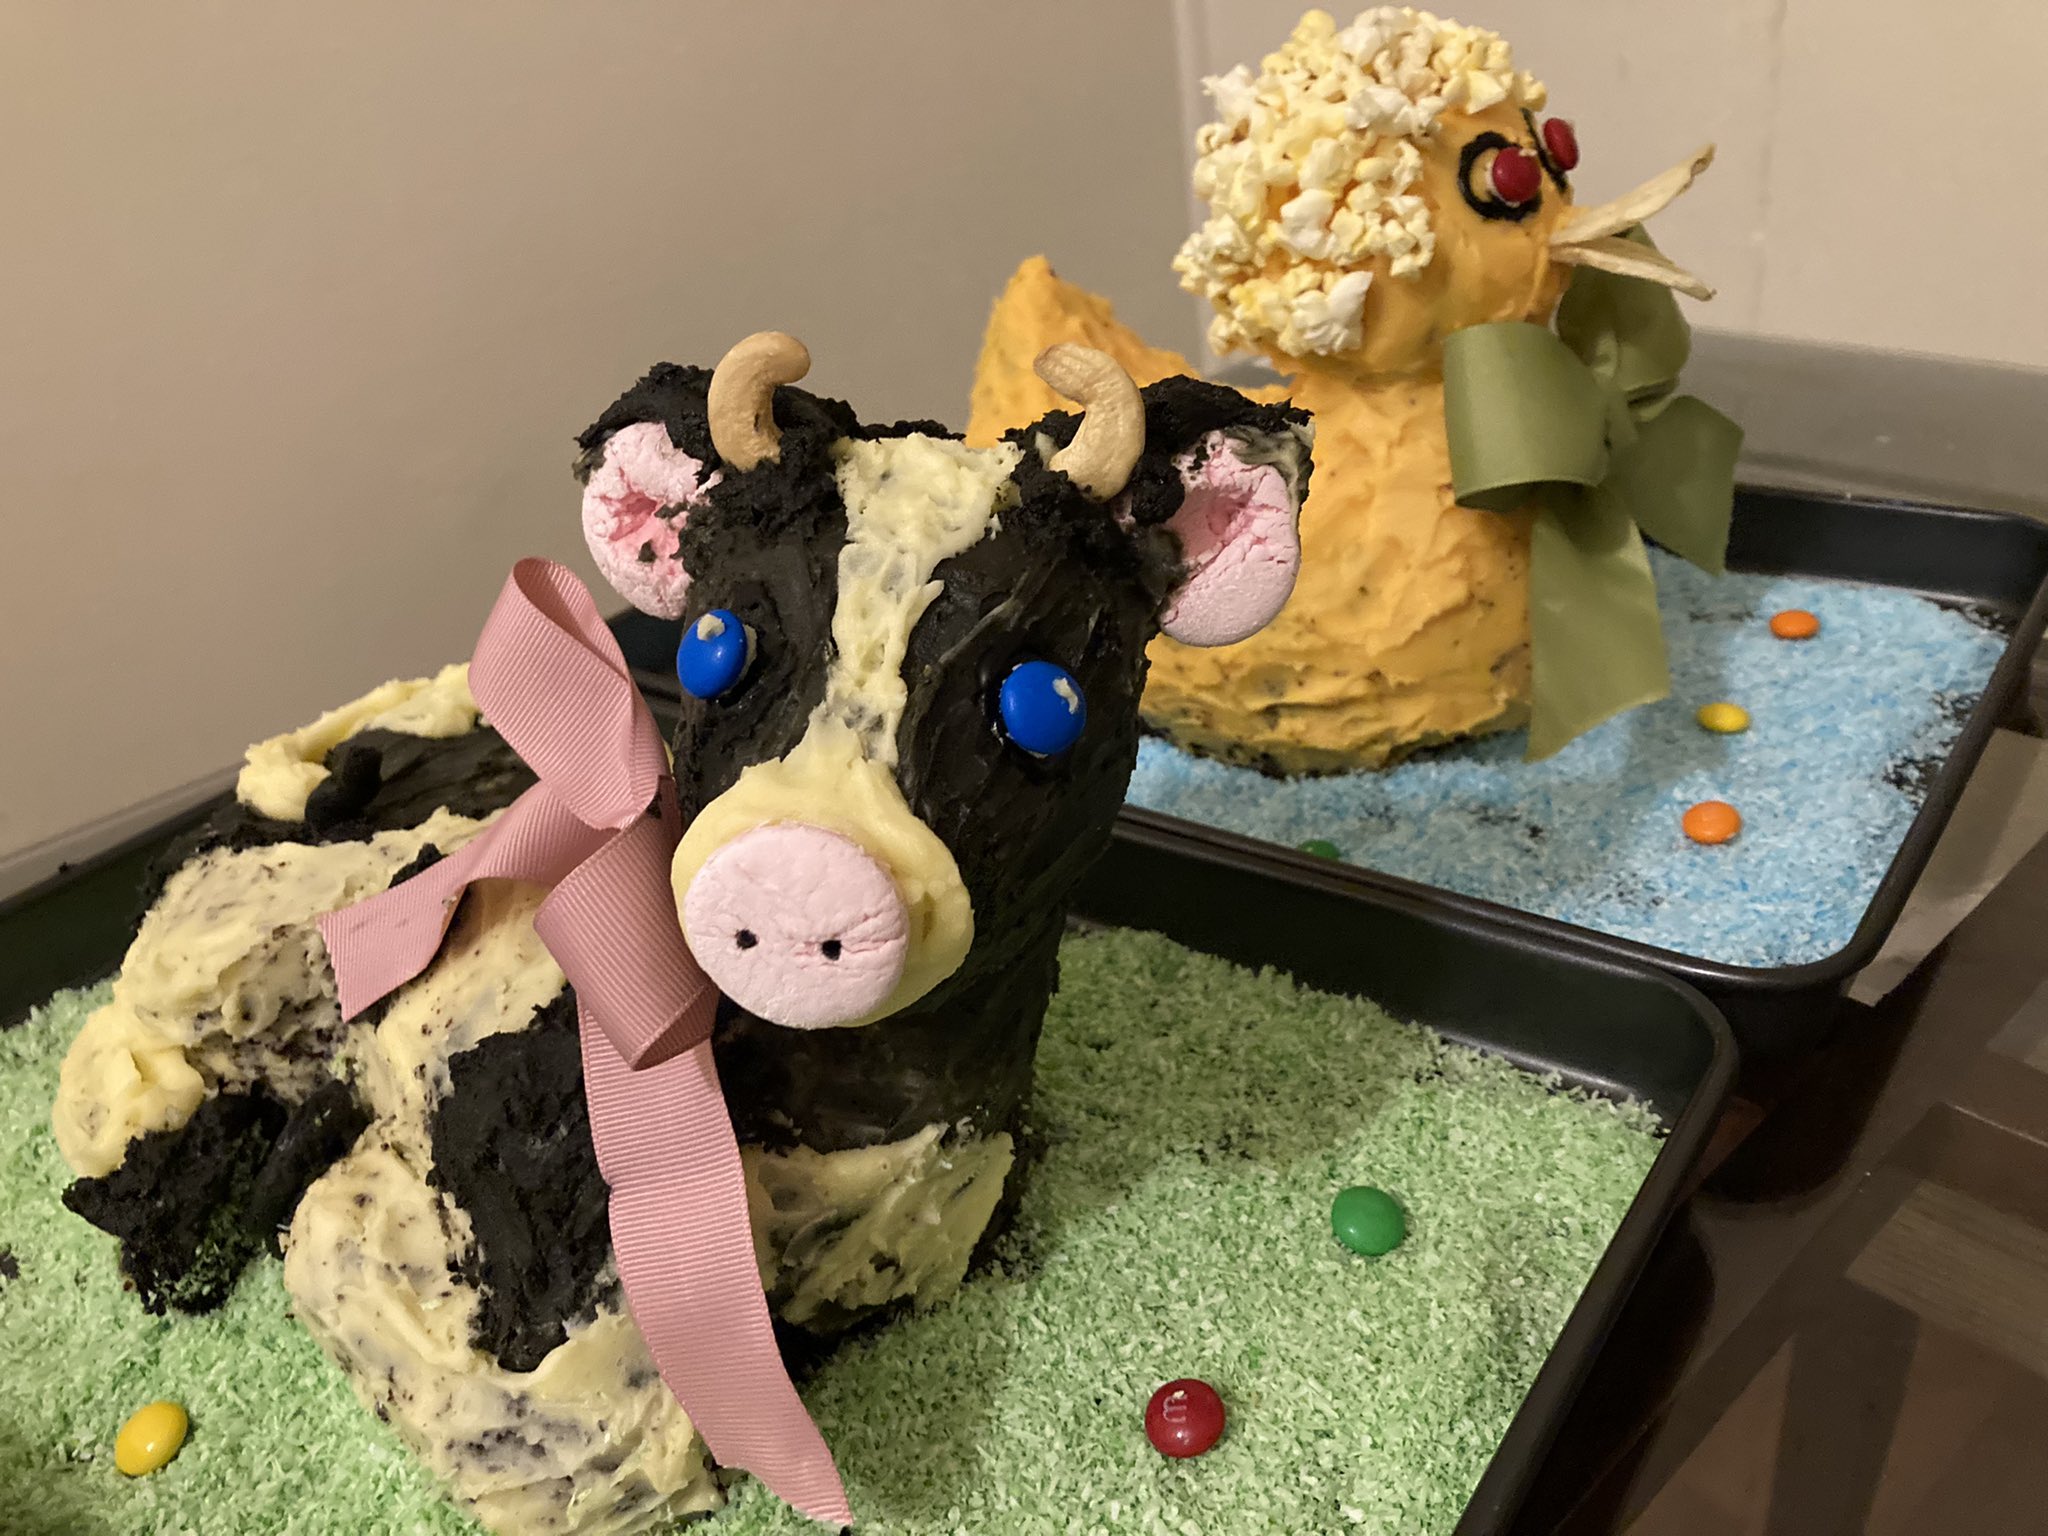 Cow Cake | Wedding Cakes Minneapolis Bakery Farmington Bakery